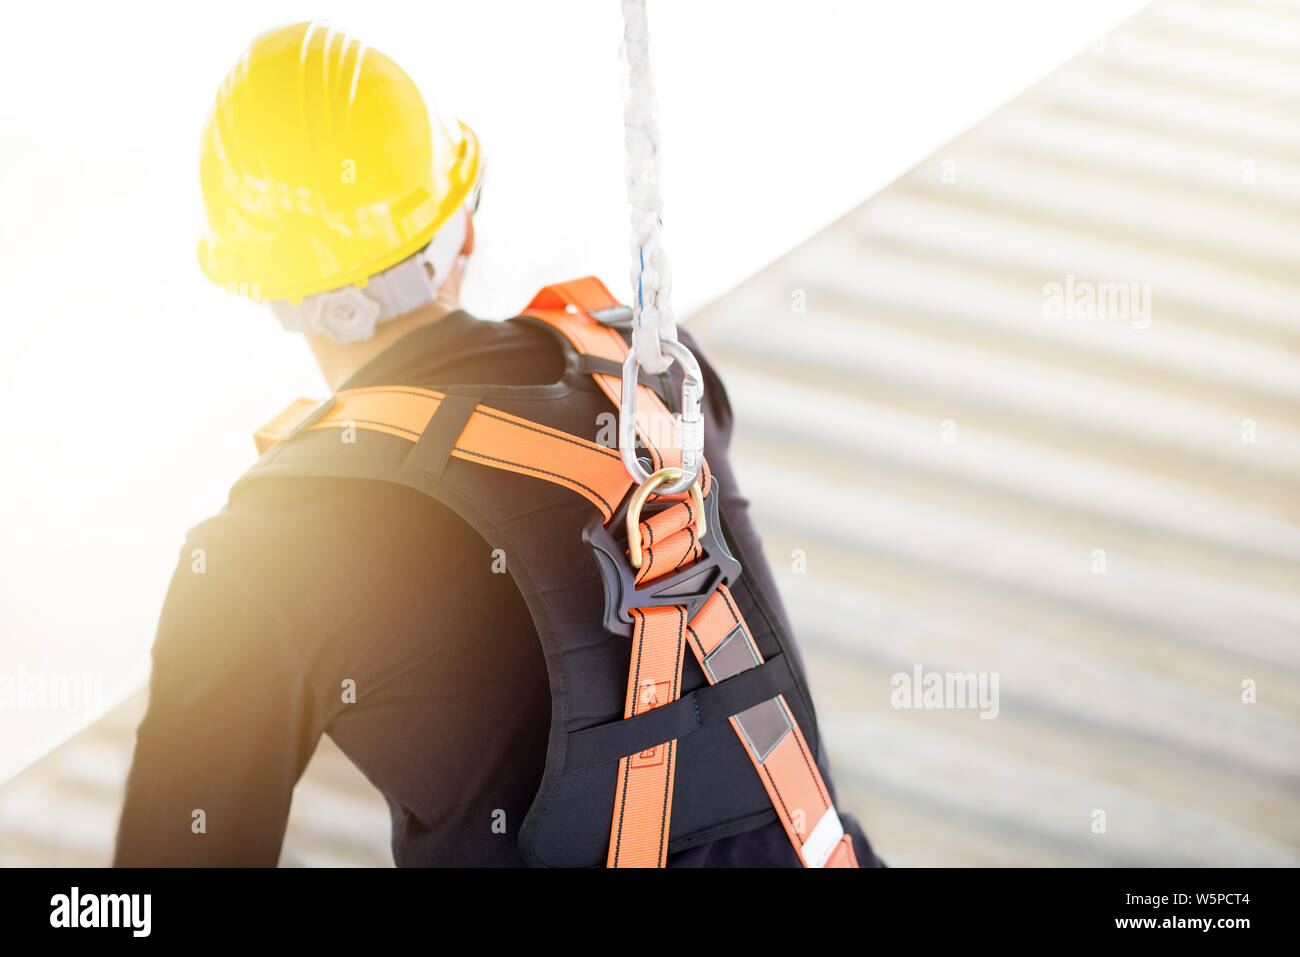 Industrielle Arbeiter mit Sicherheit Schutzausrüstung Schleife in seinem Rücken, Sicherheitskonzept Stockfoto